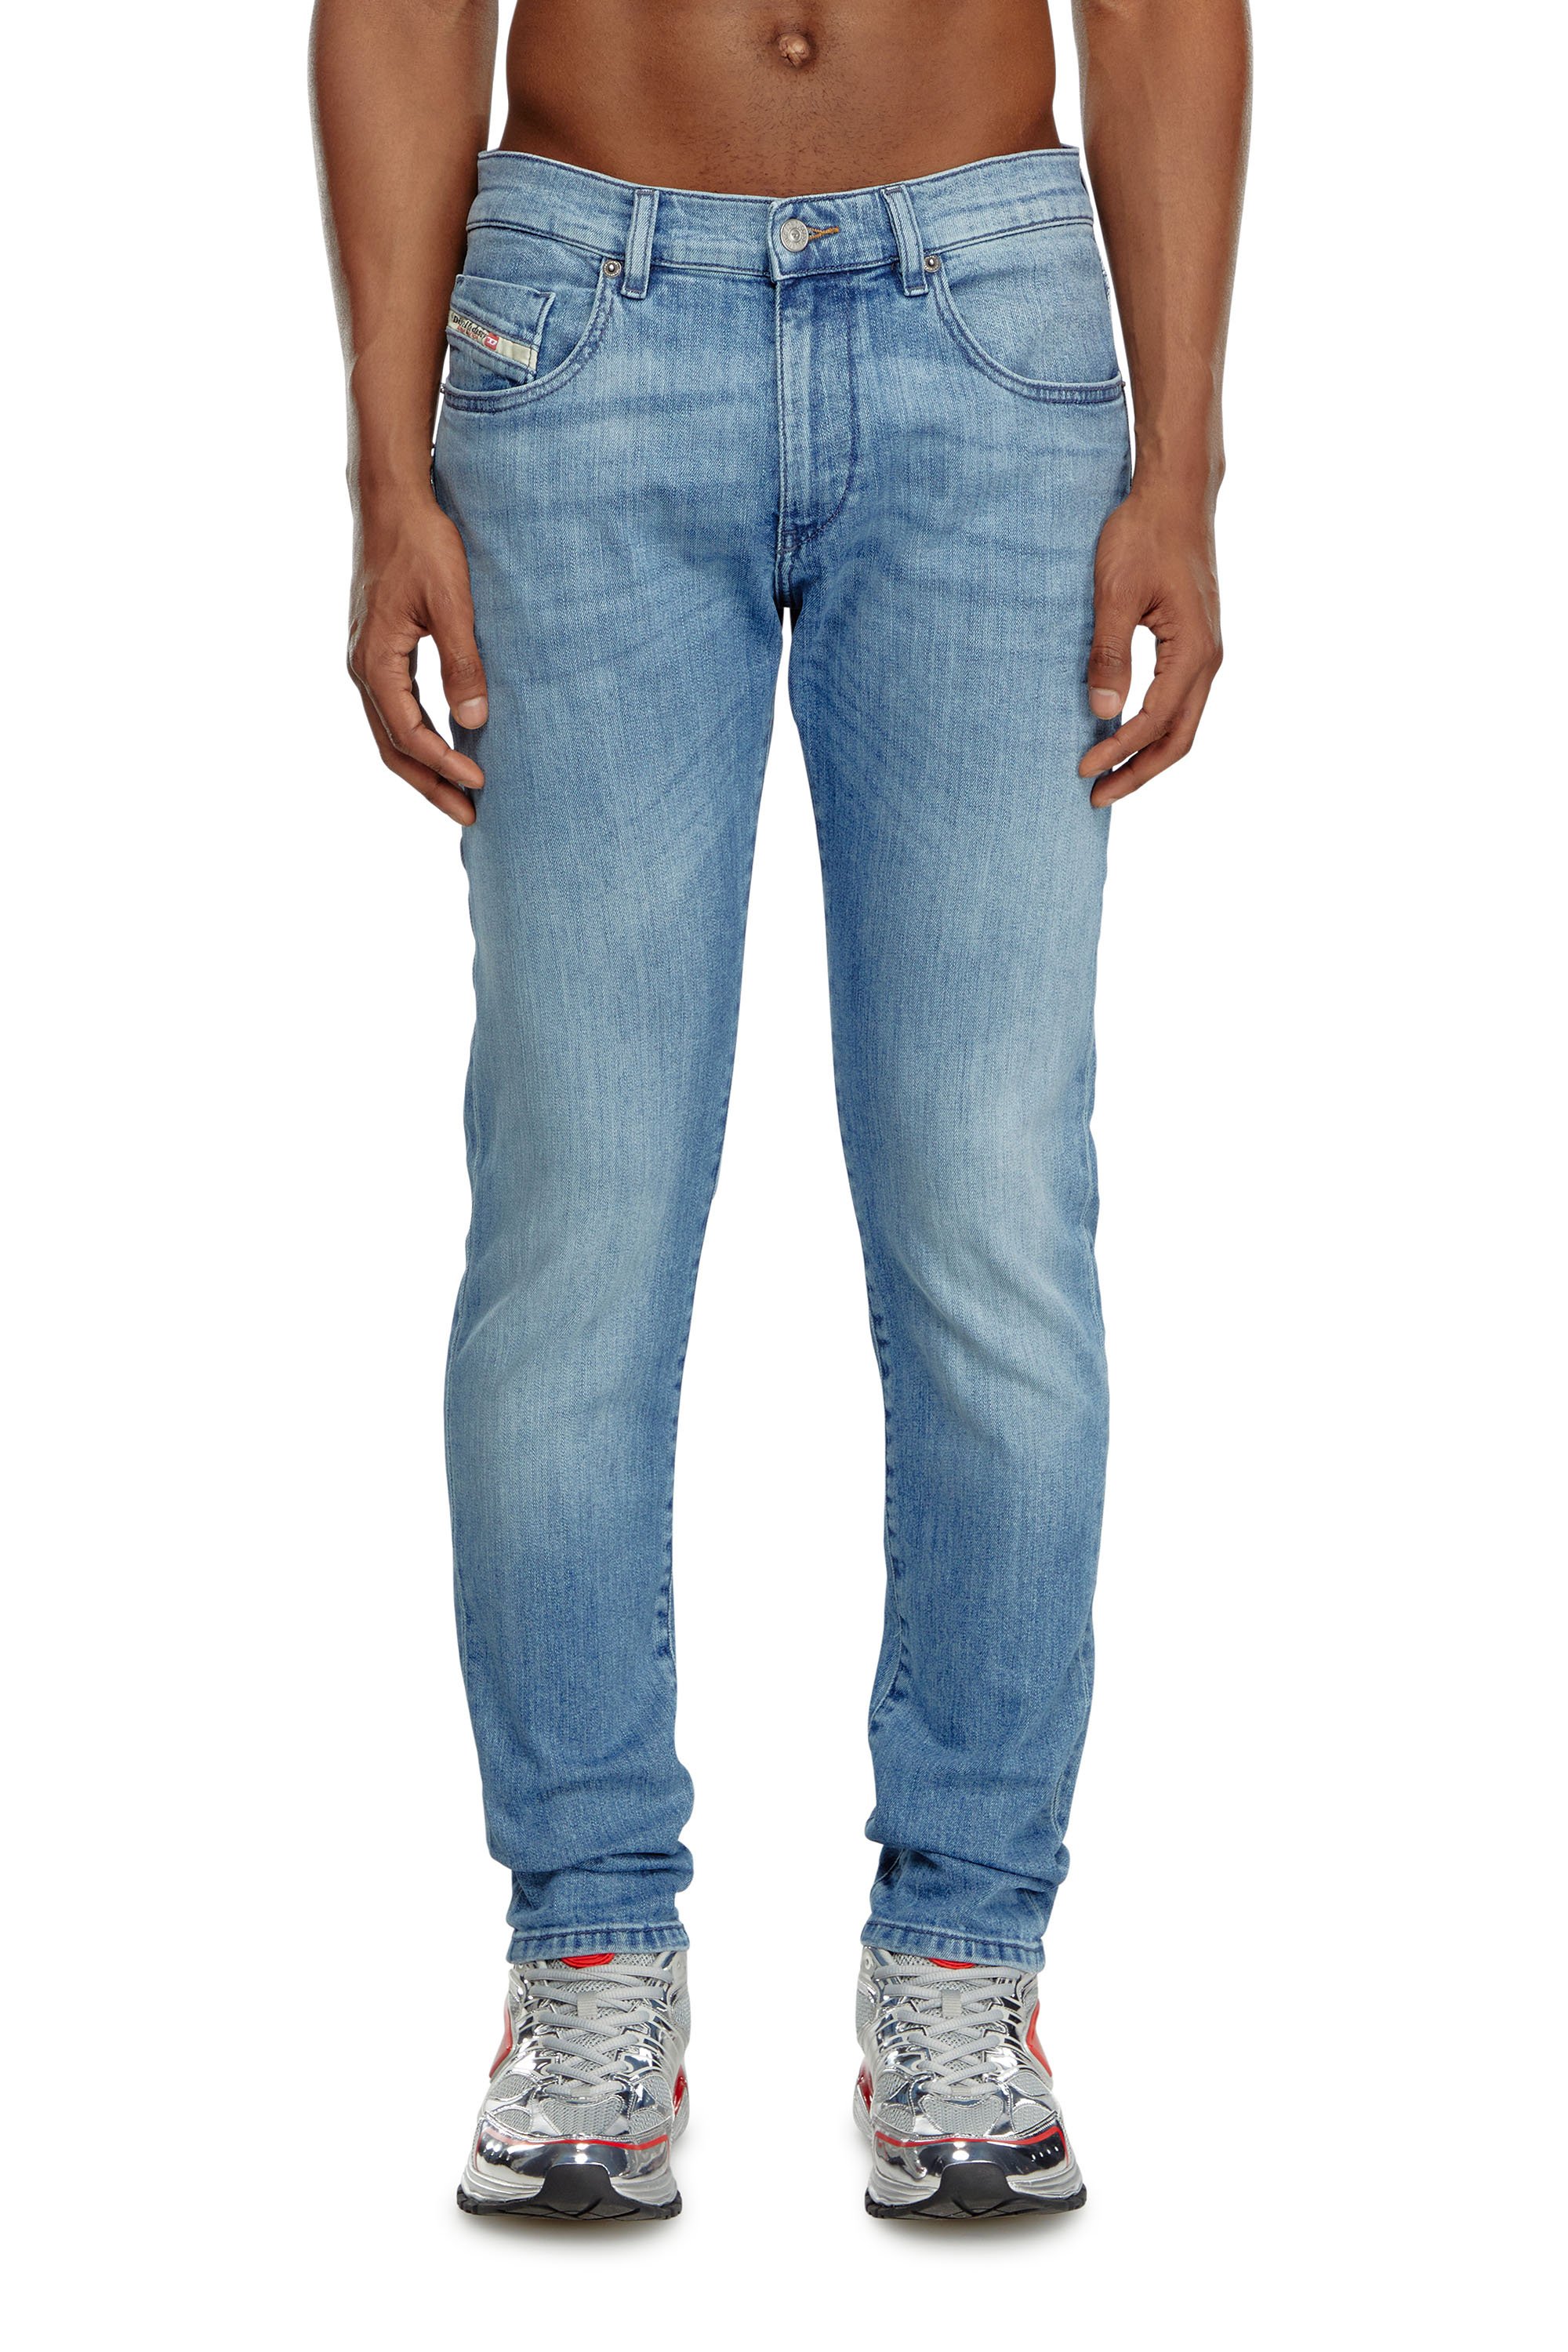 Diesel - Slim Jeans 2019 D-Strukt 0GRDI, Hombre Slim Jeans - 2019 D-Strukt in Azul marino - Image 1